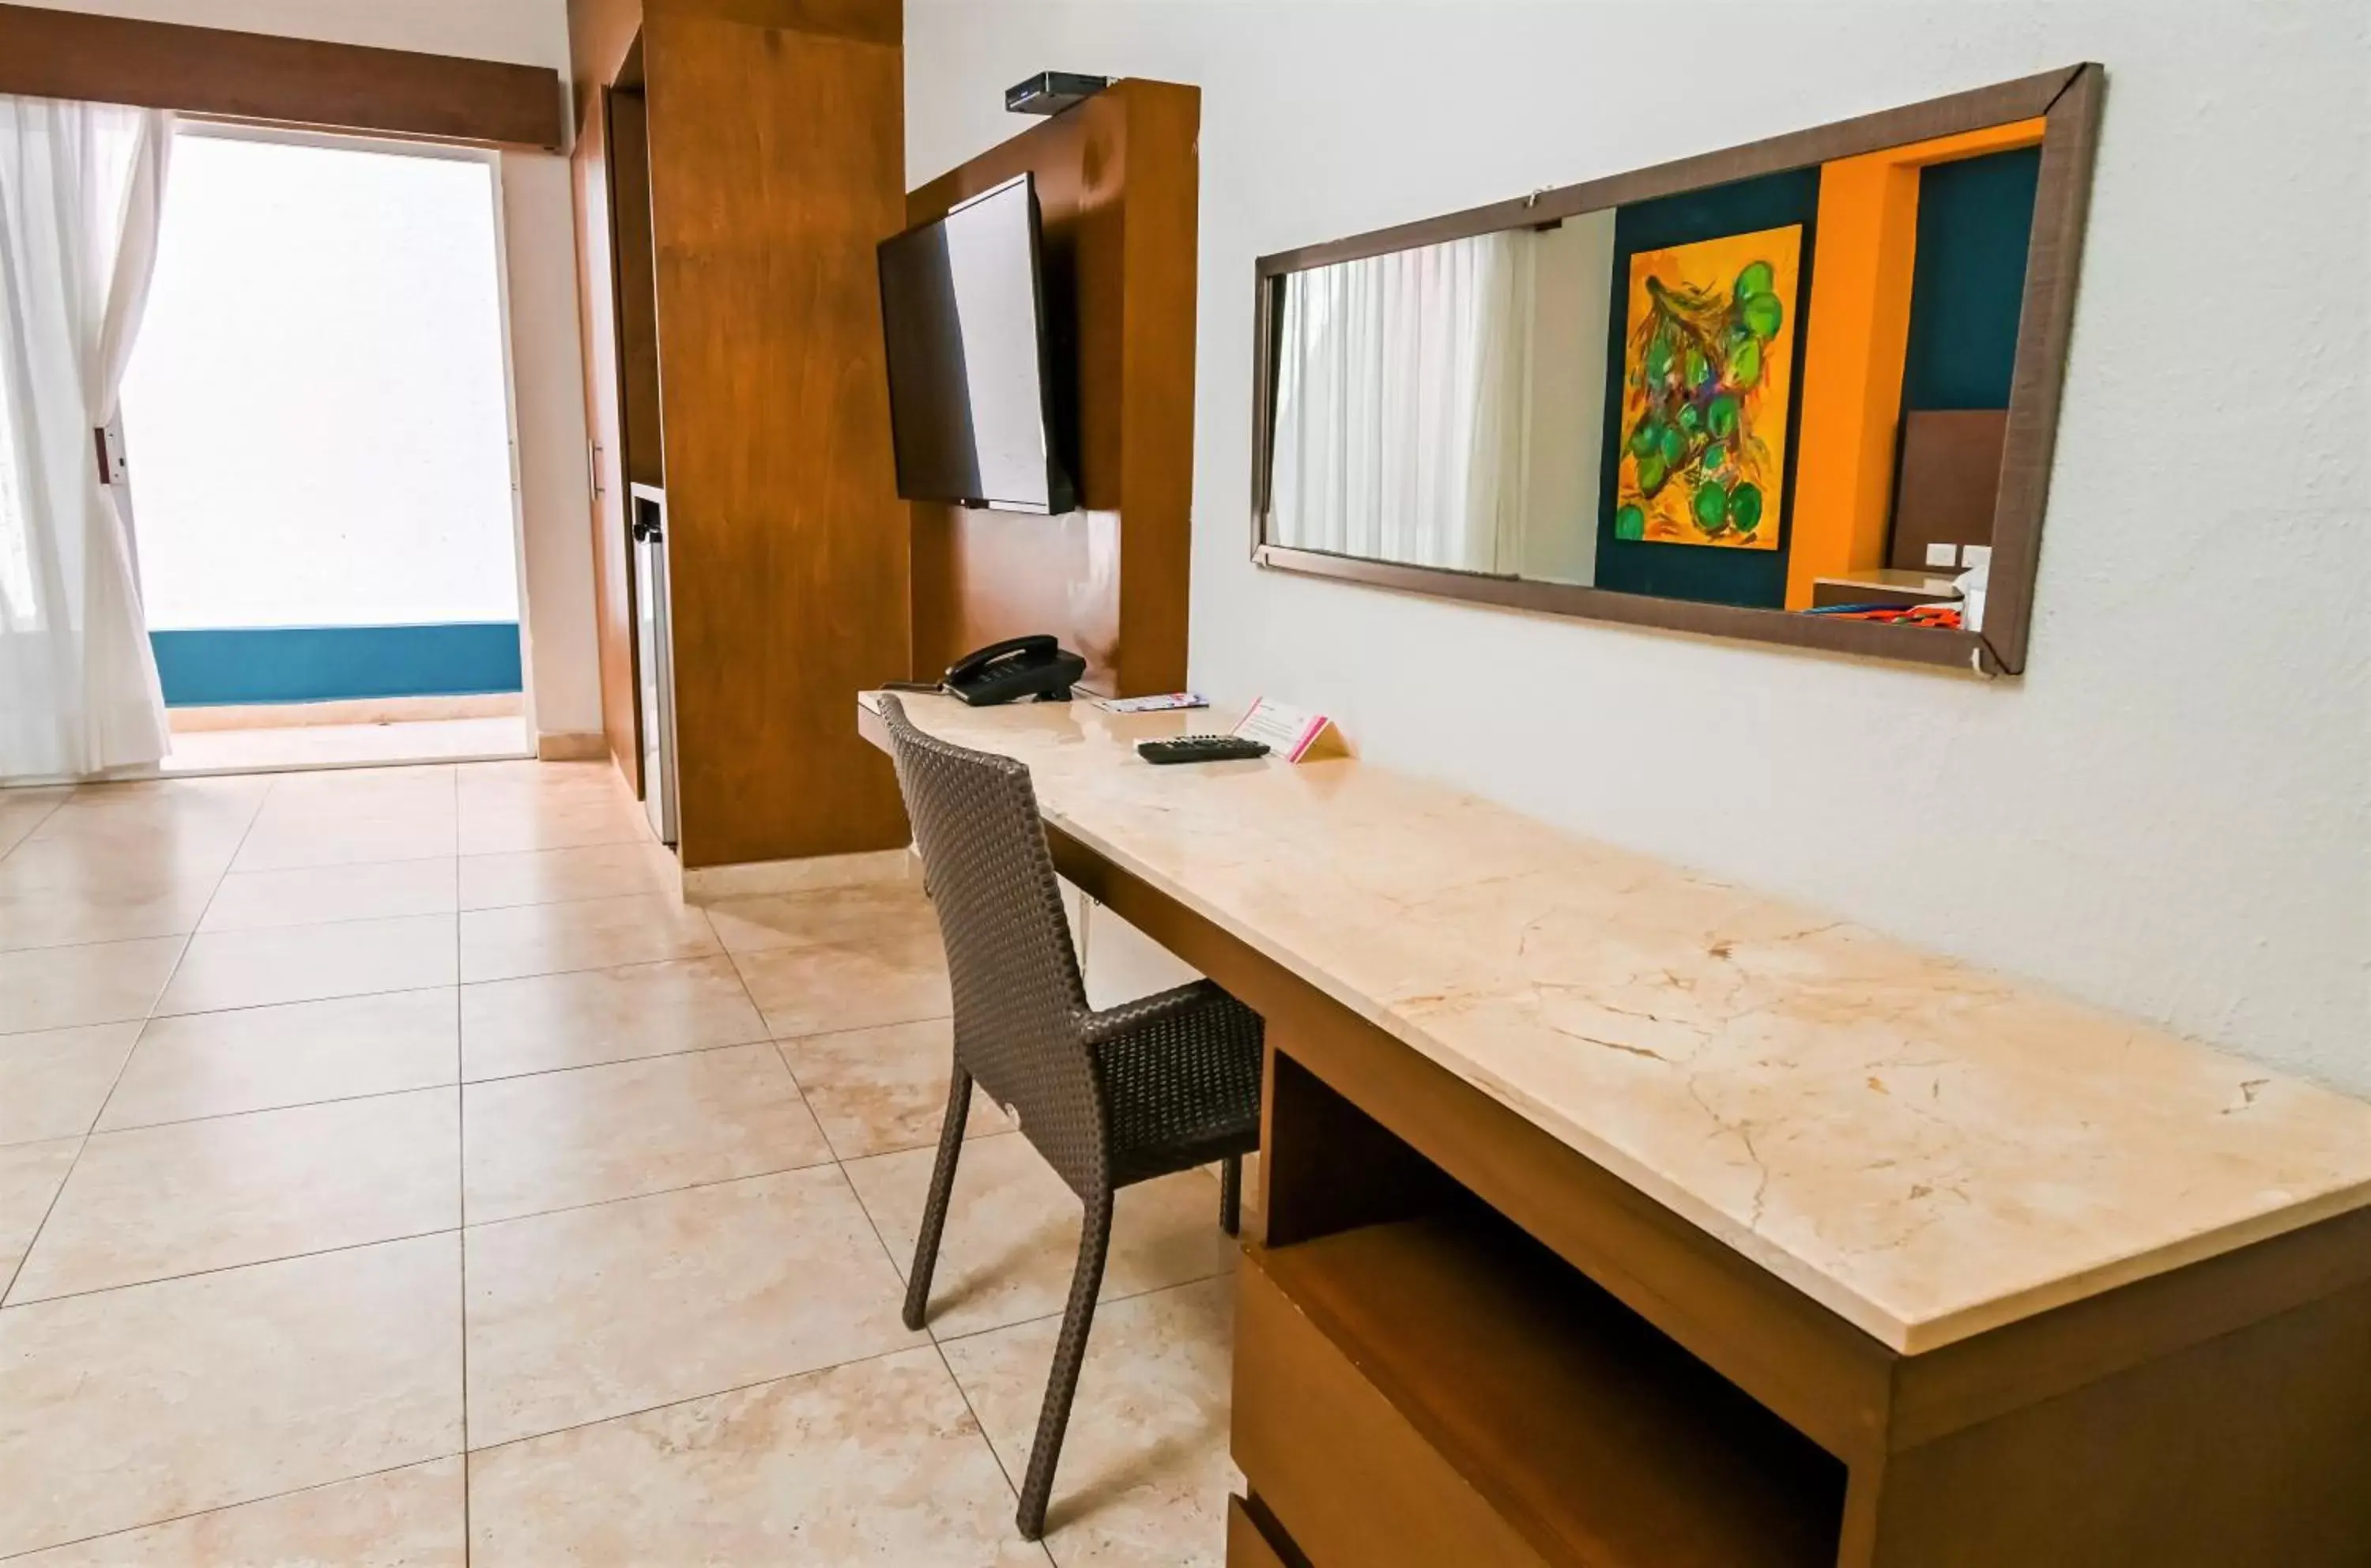 Area and facilities in Hotel Mariachi by Kavia 5th Av